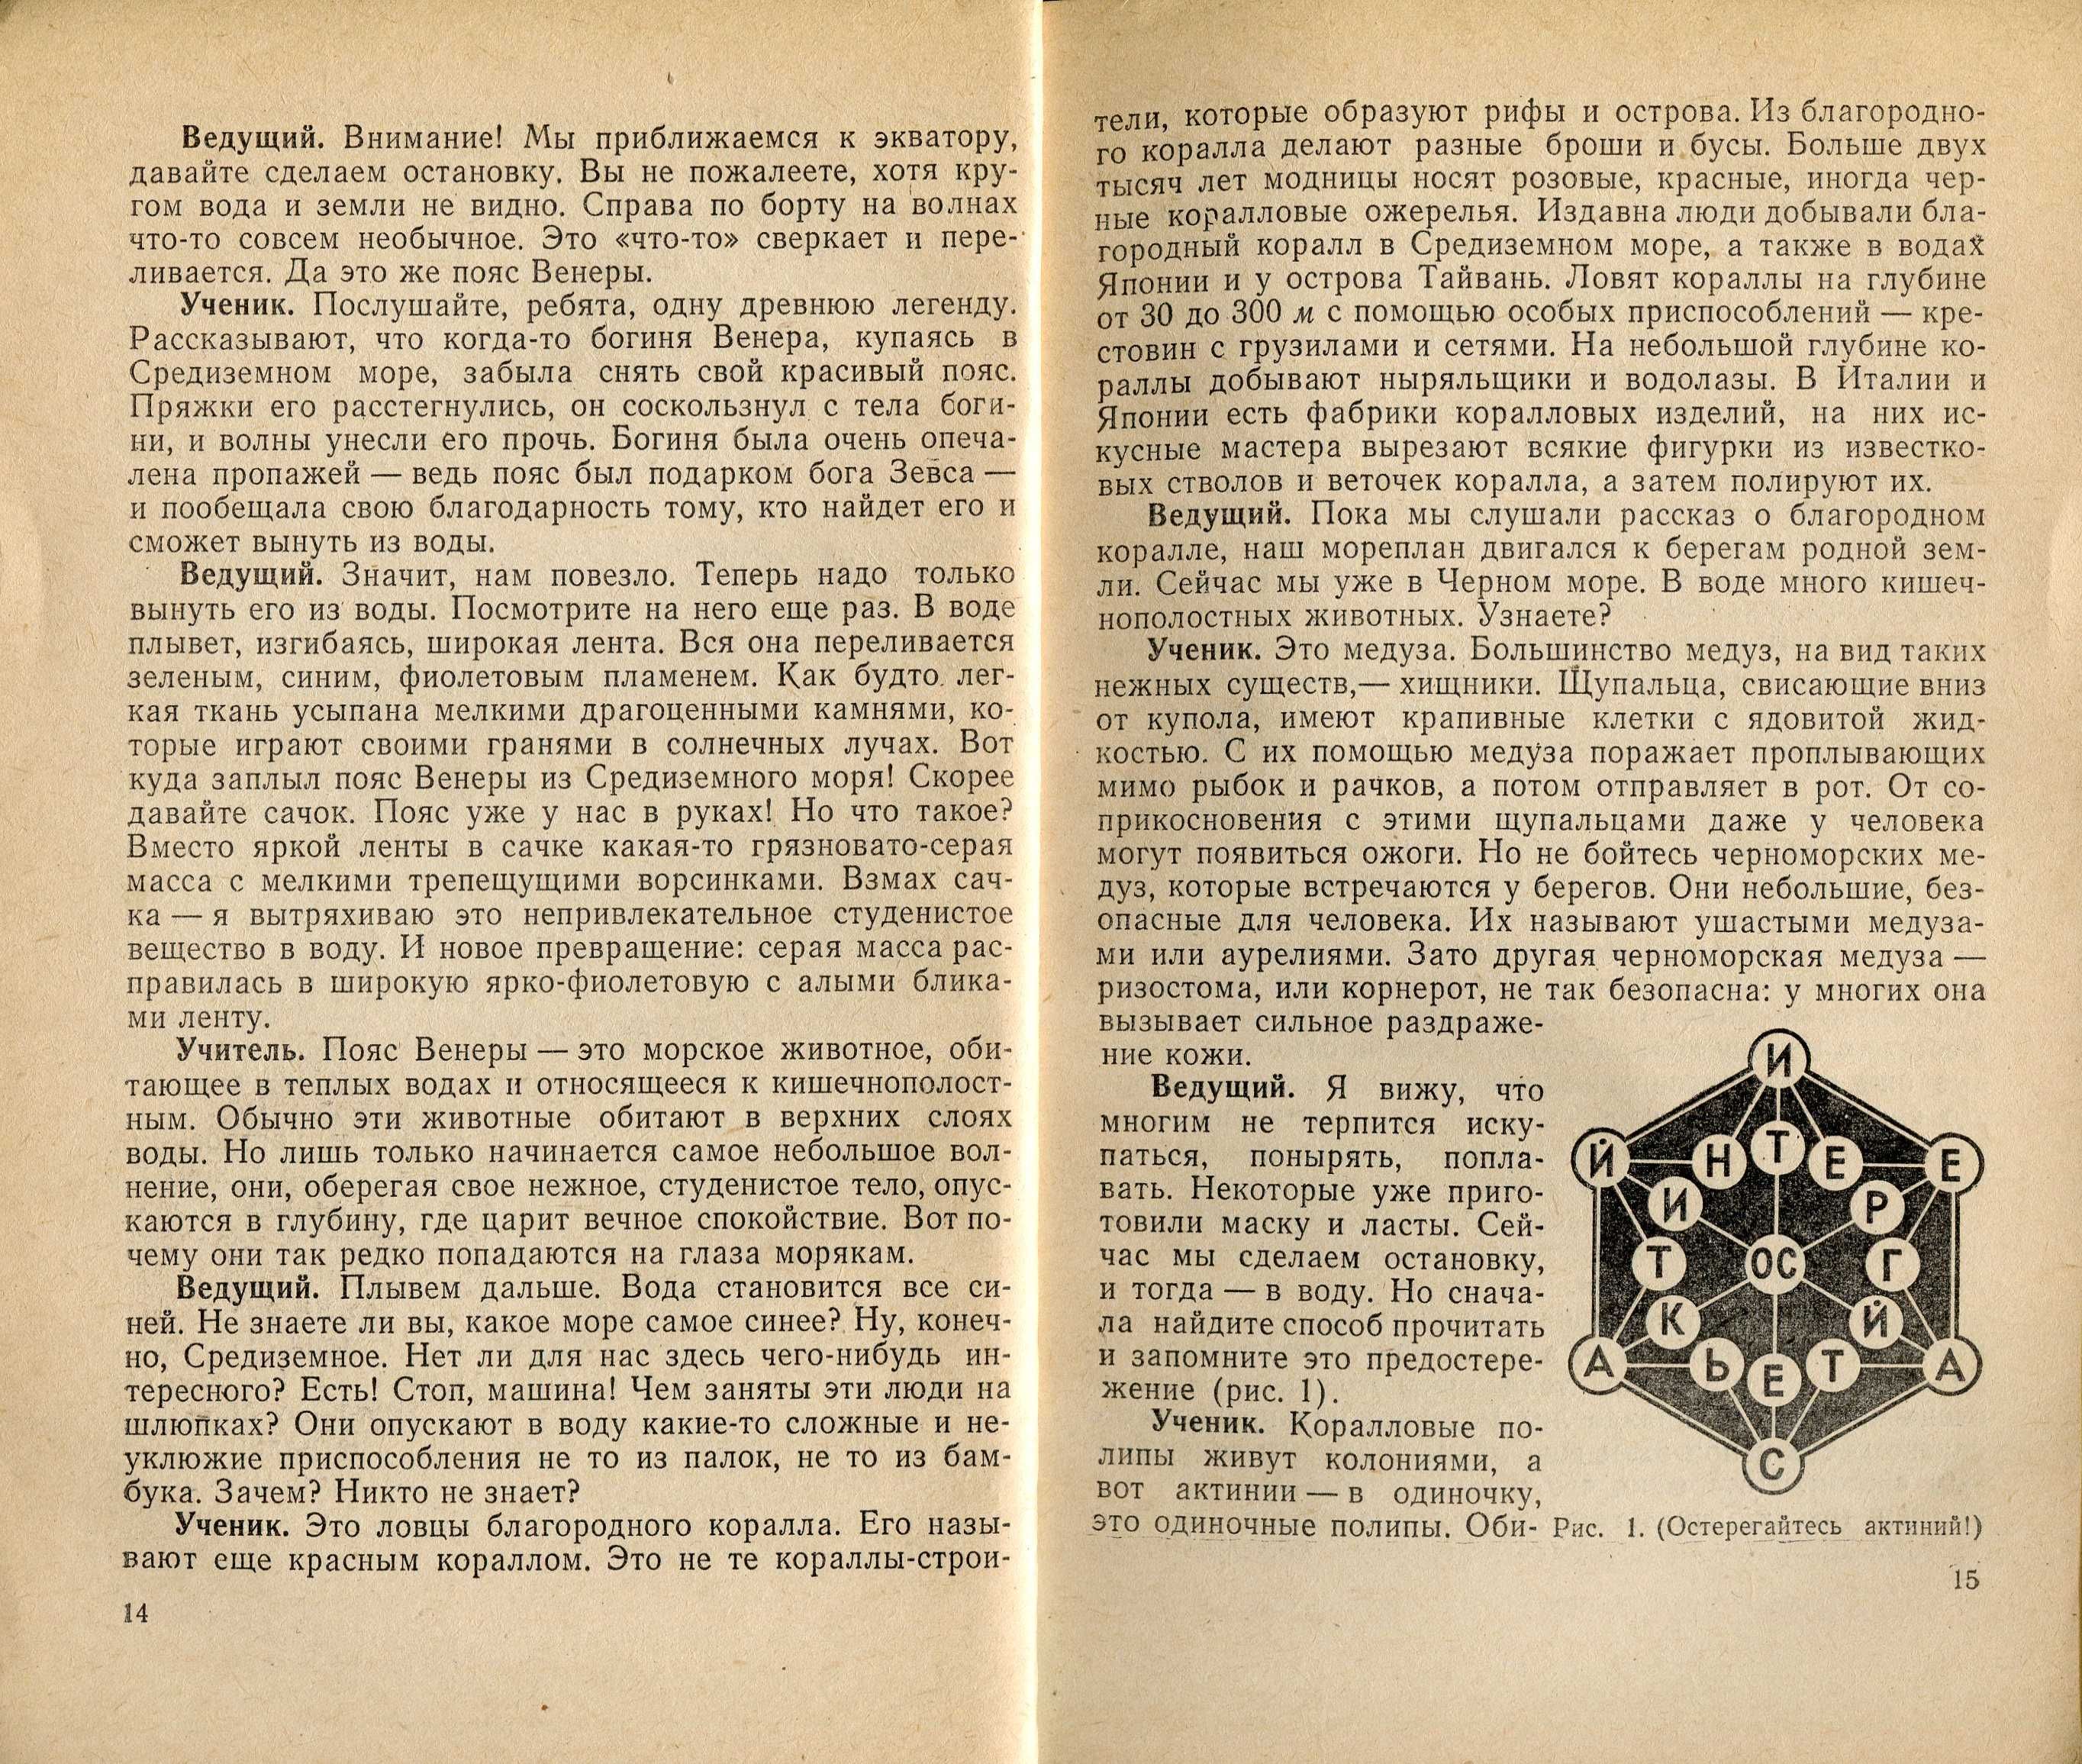 Жукова Т.И. Часы занимательной зоологии (1973) - 159 с.